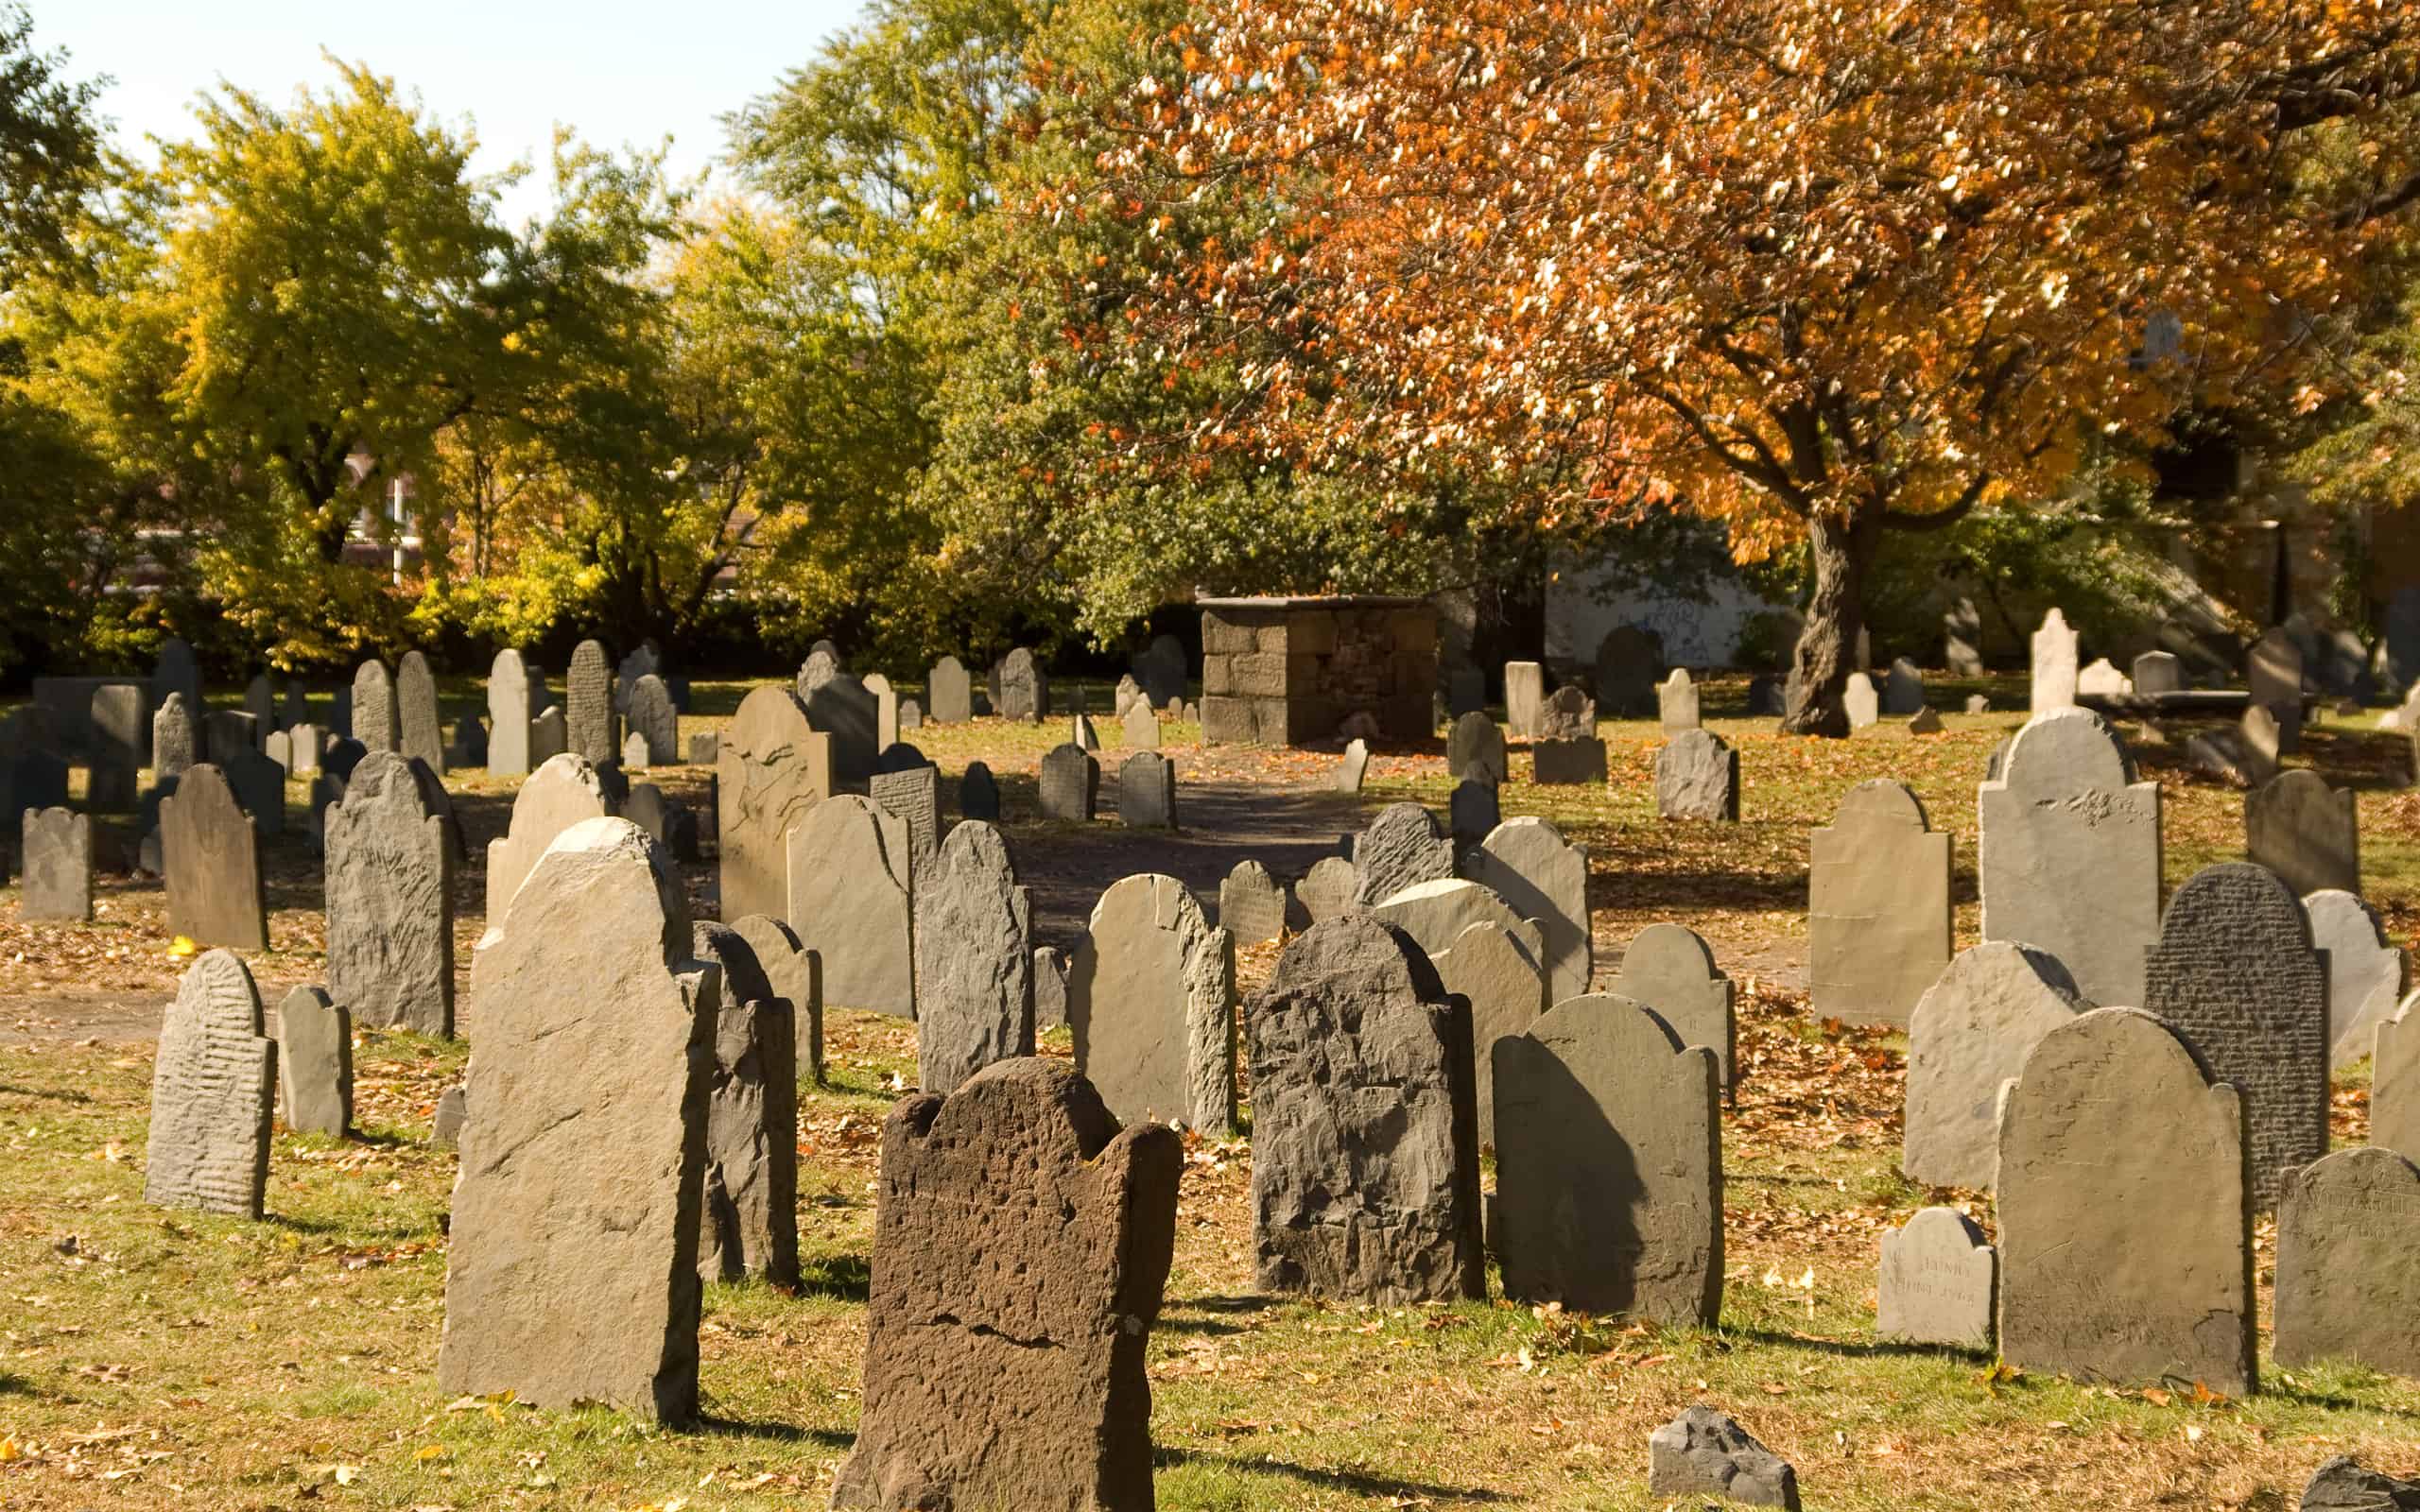 Cemetery stones